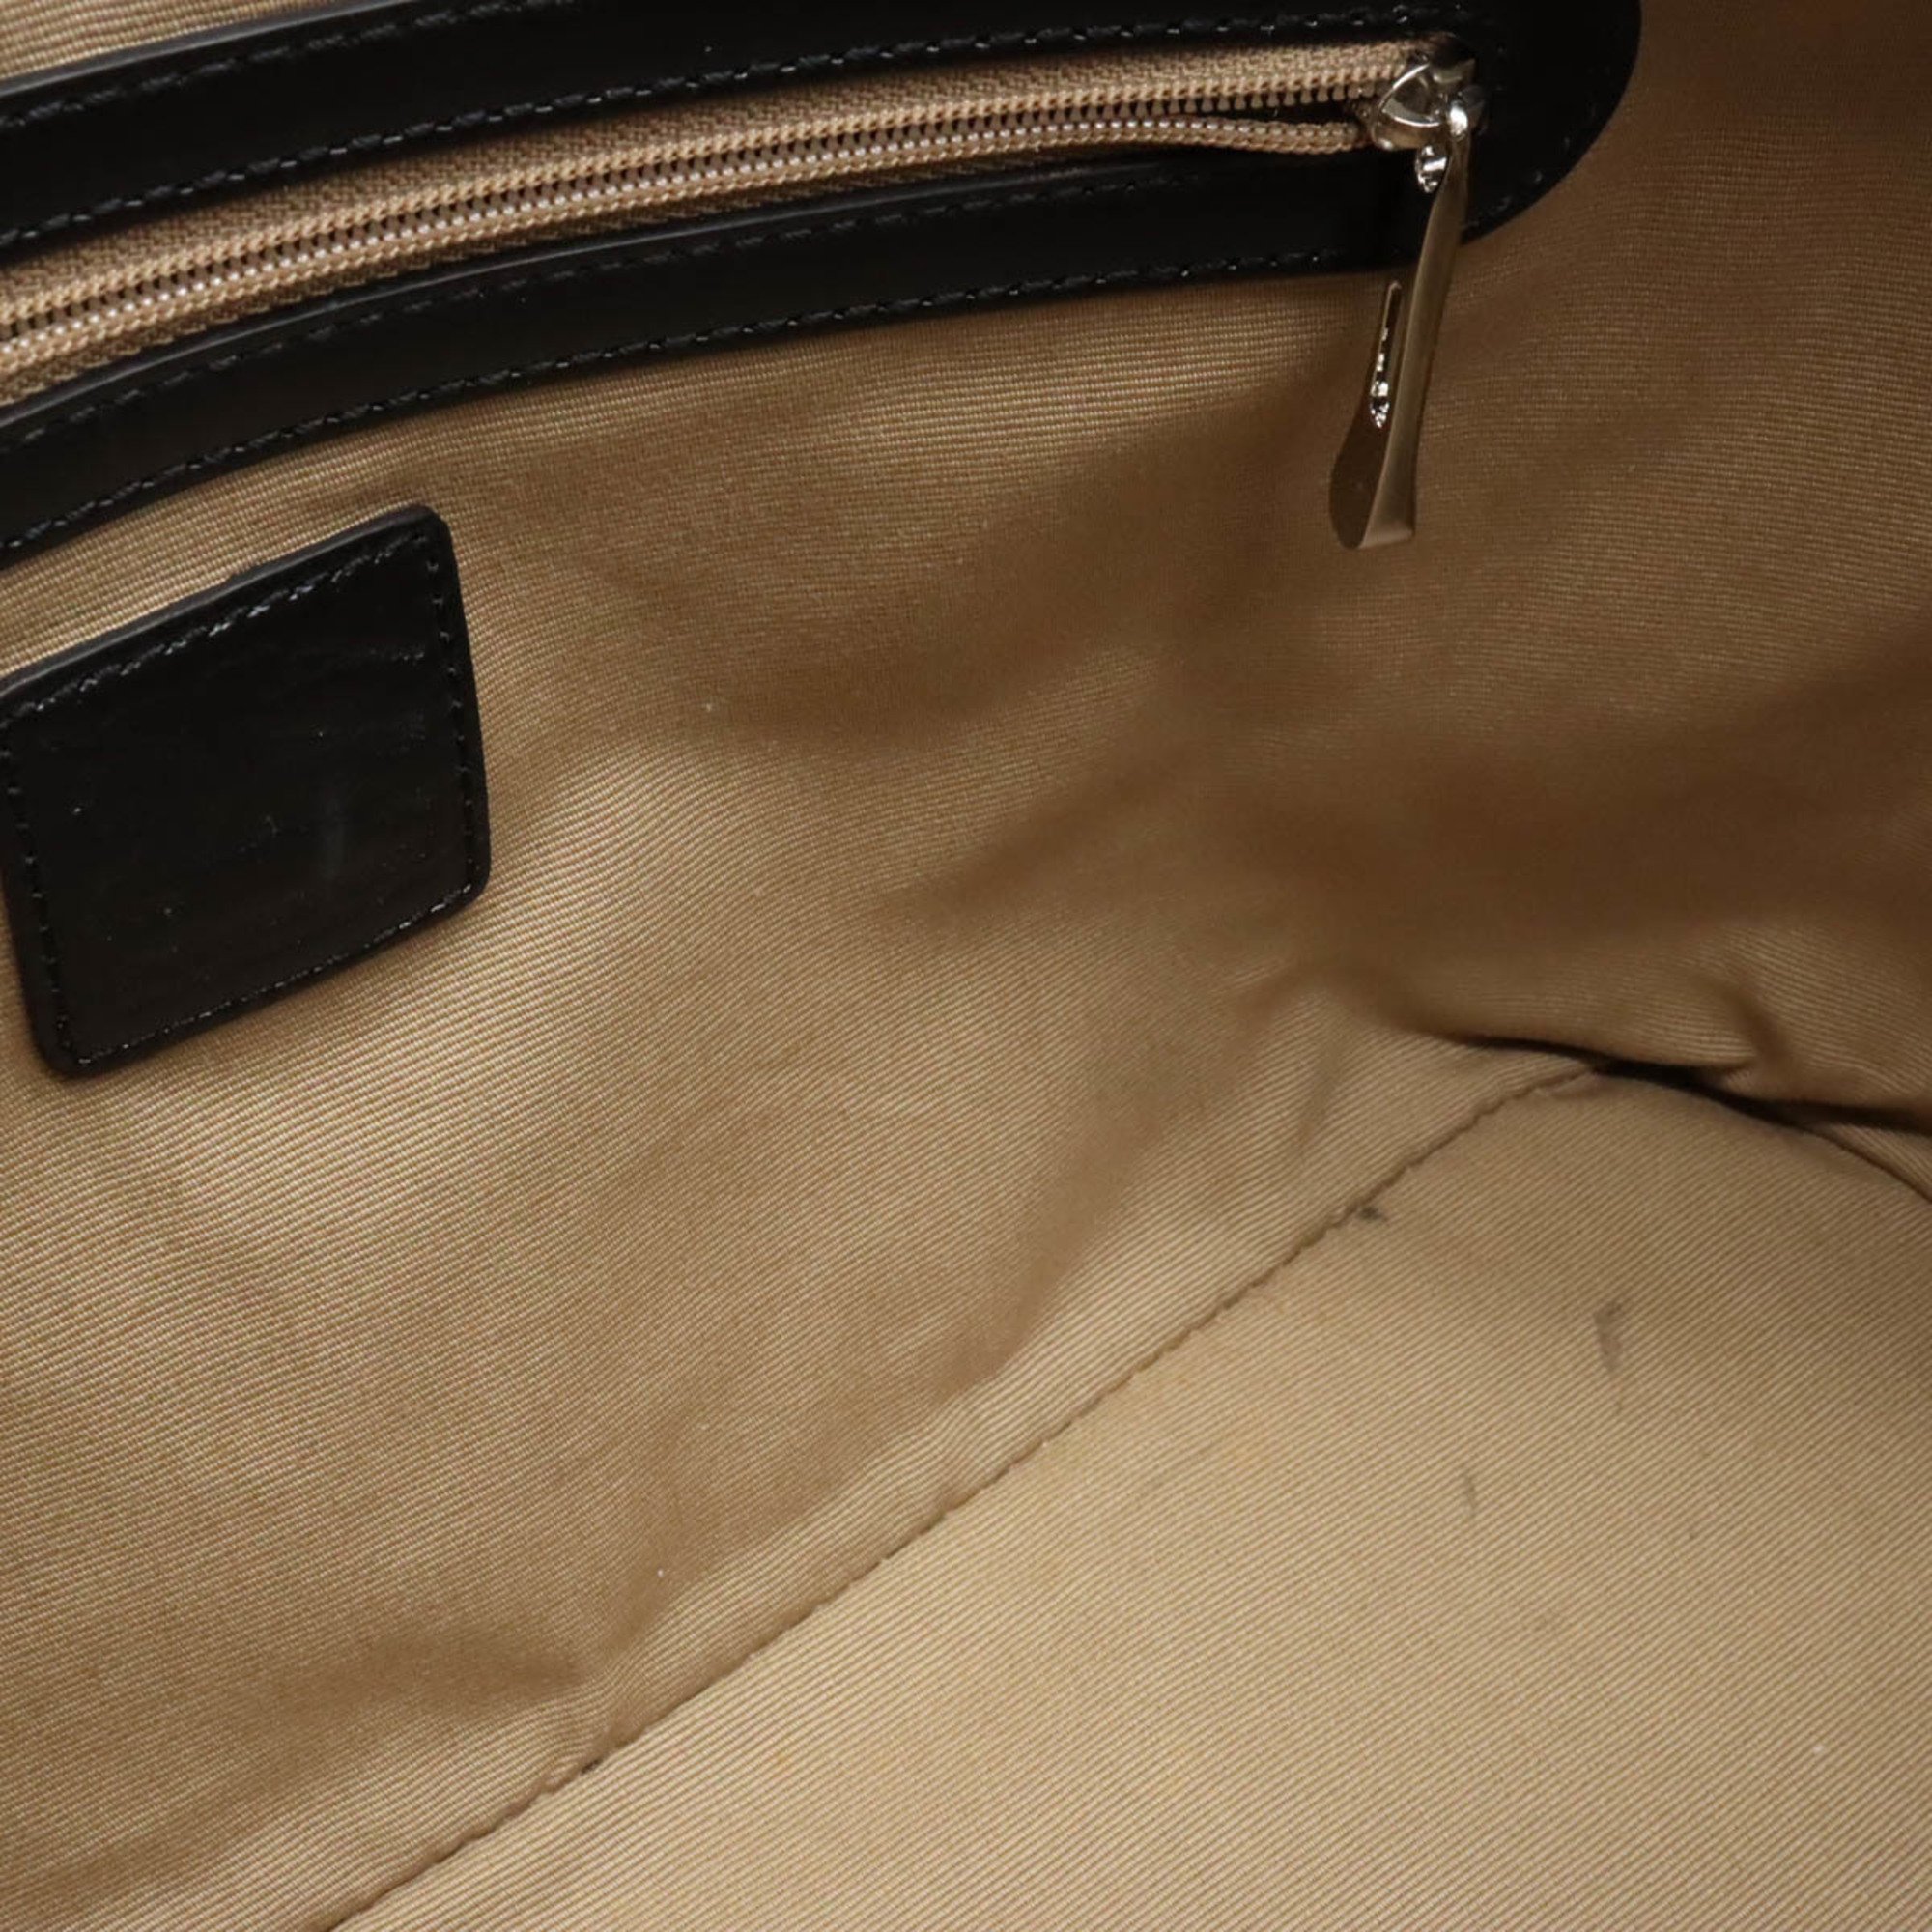 BURBERRY Burberry Plaid Tote Bag Shoulder PVC Patent Leather Beige Black Bordeaux